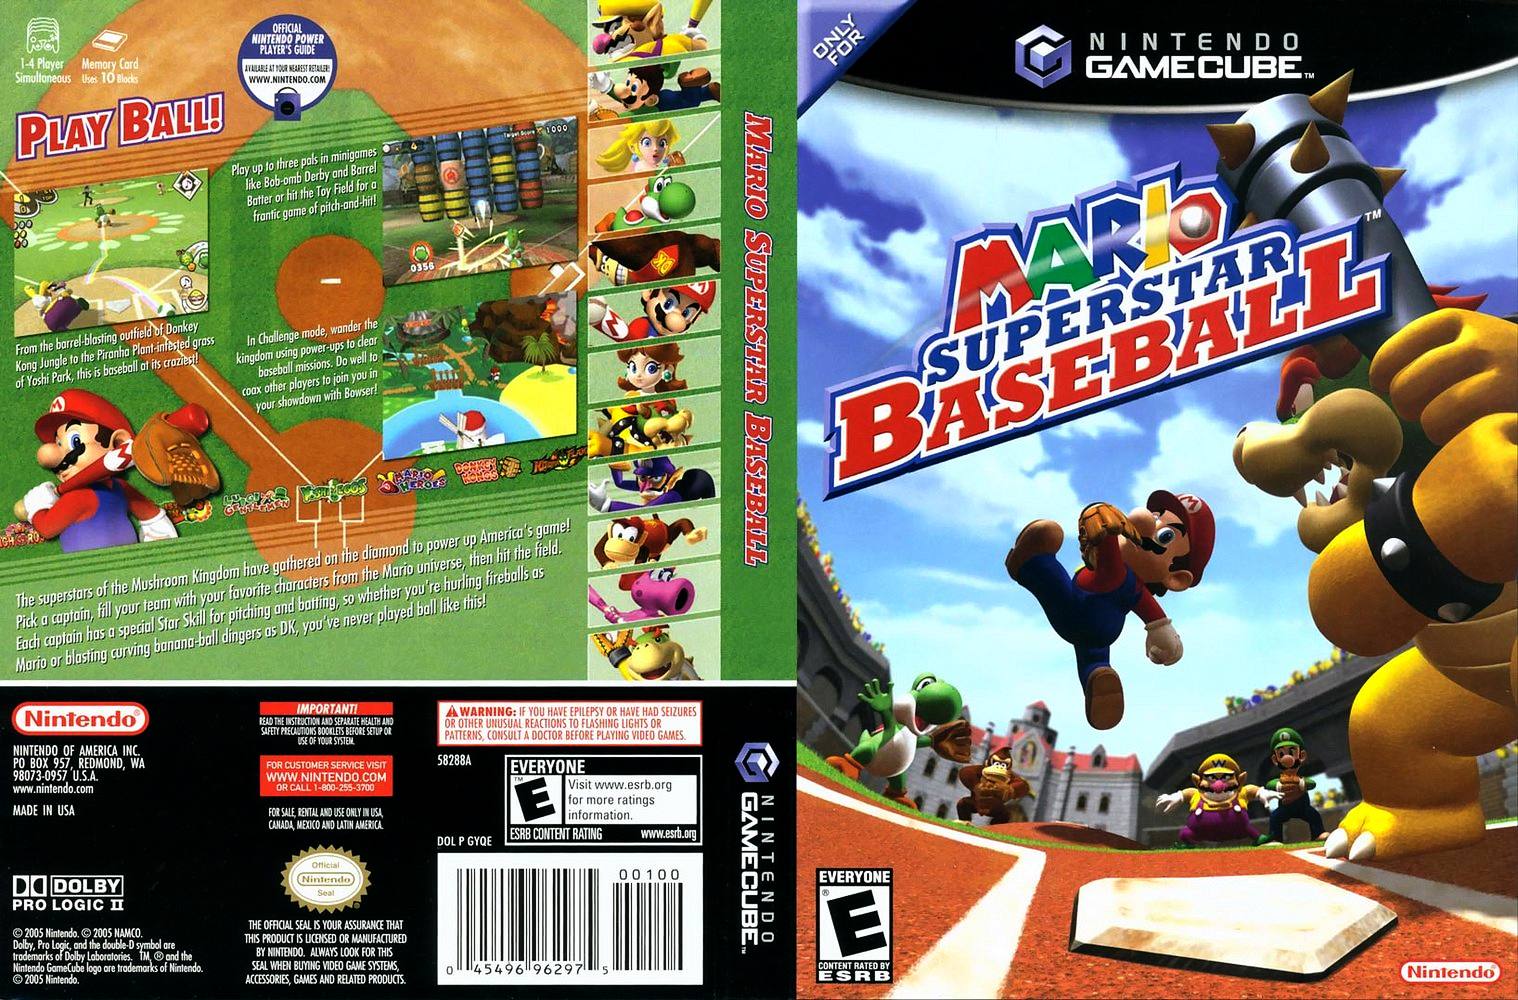 Mario superstar baseball